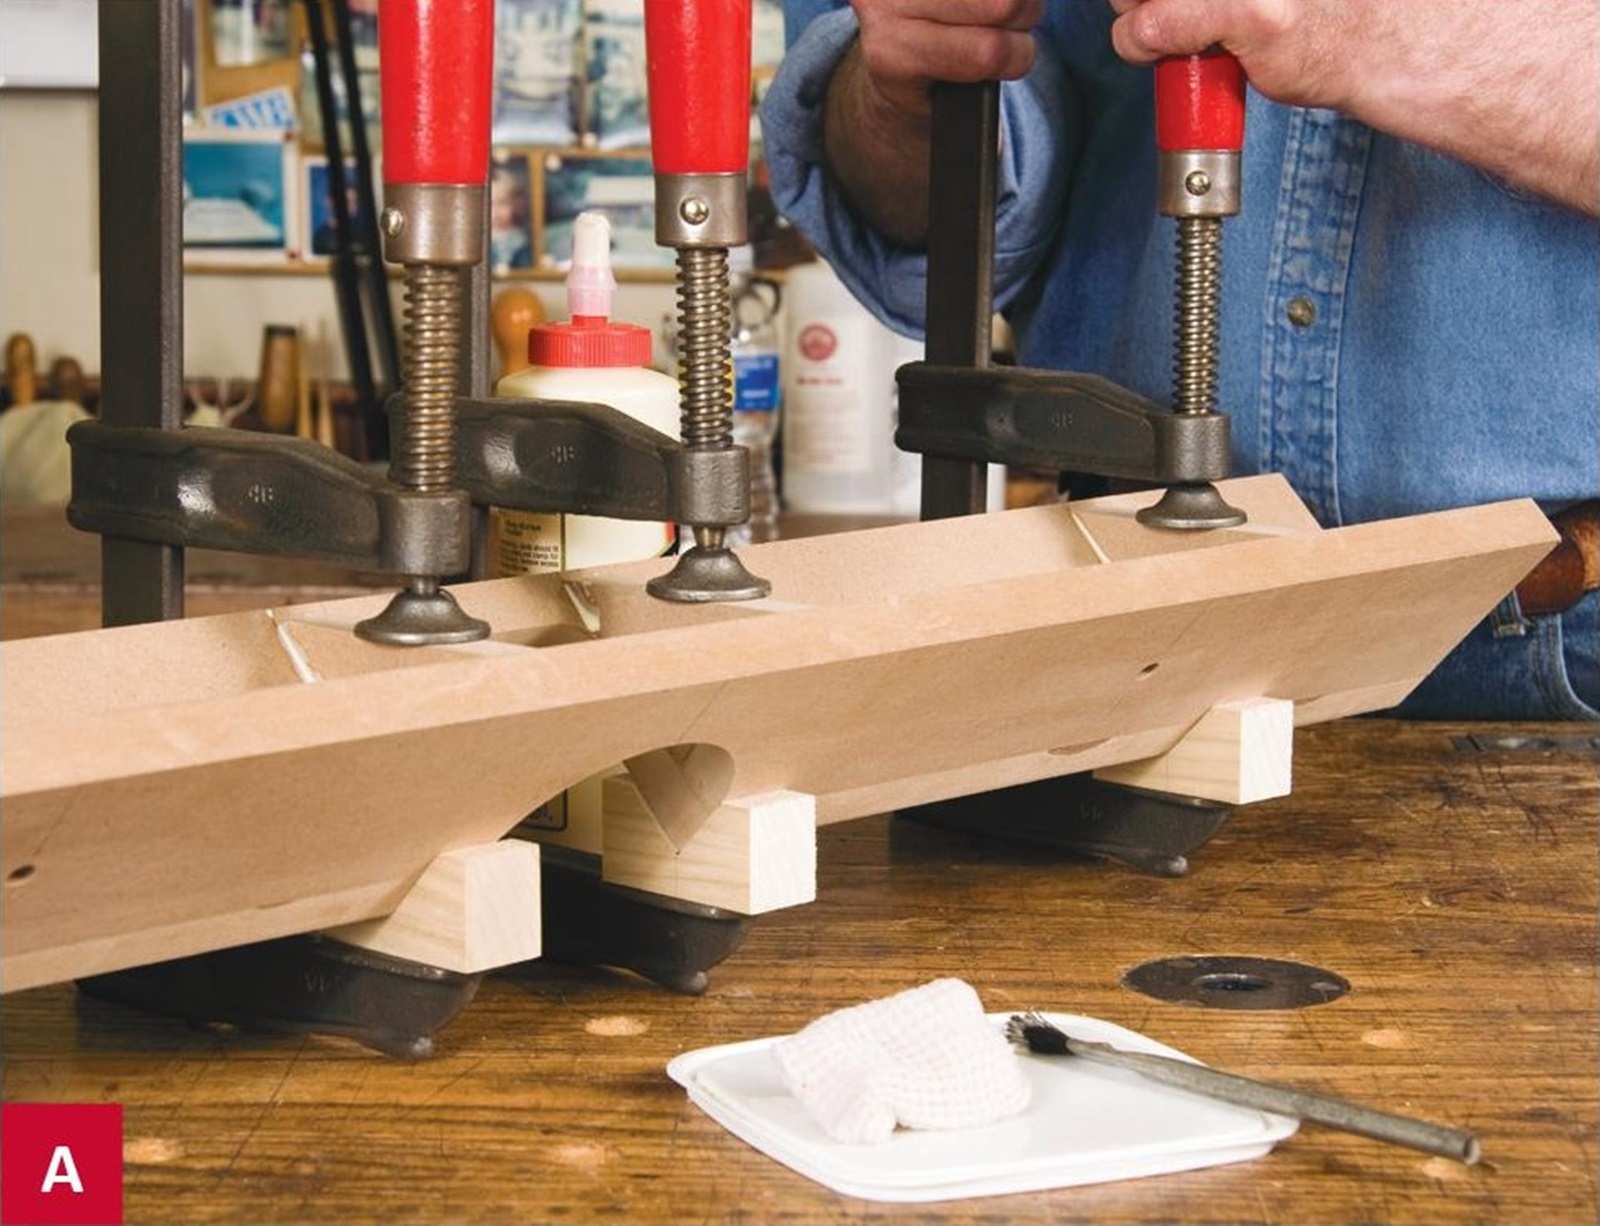 Tạo một bộ đế có dáng hình chữ V giúp hỗ trợ kẹp các miếng gỗ vào